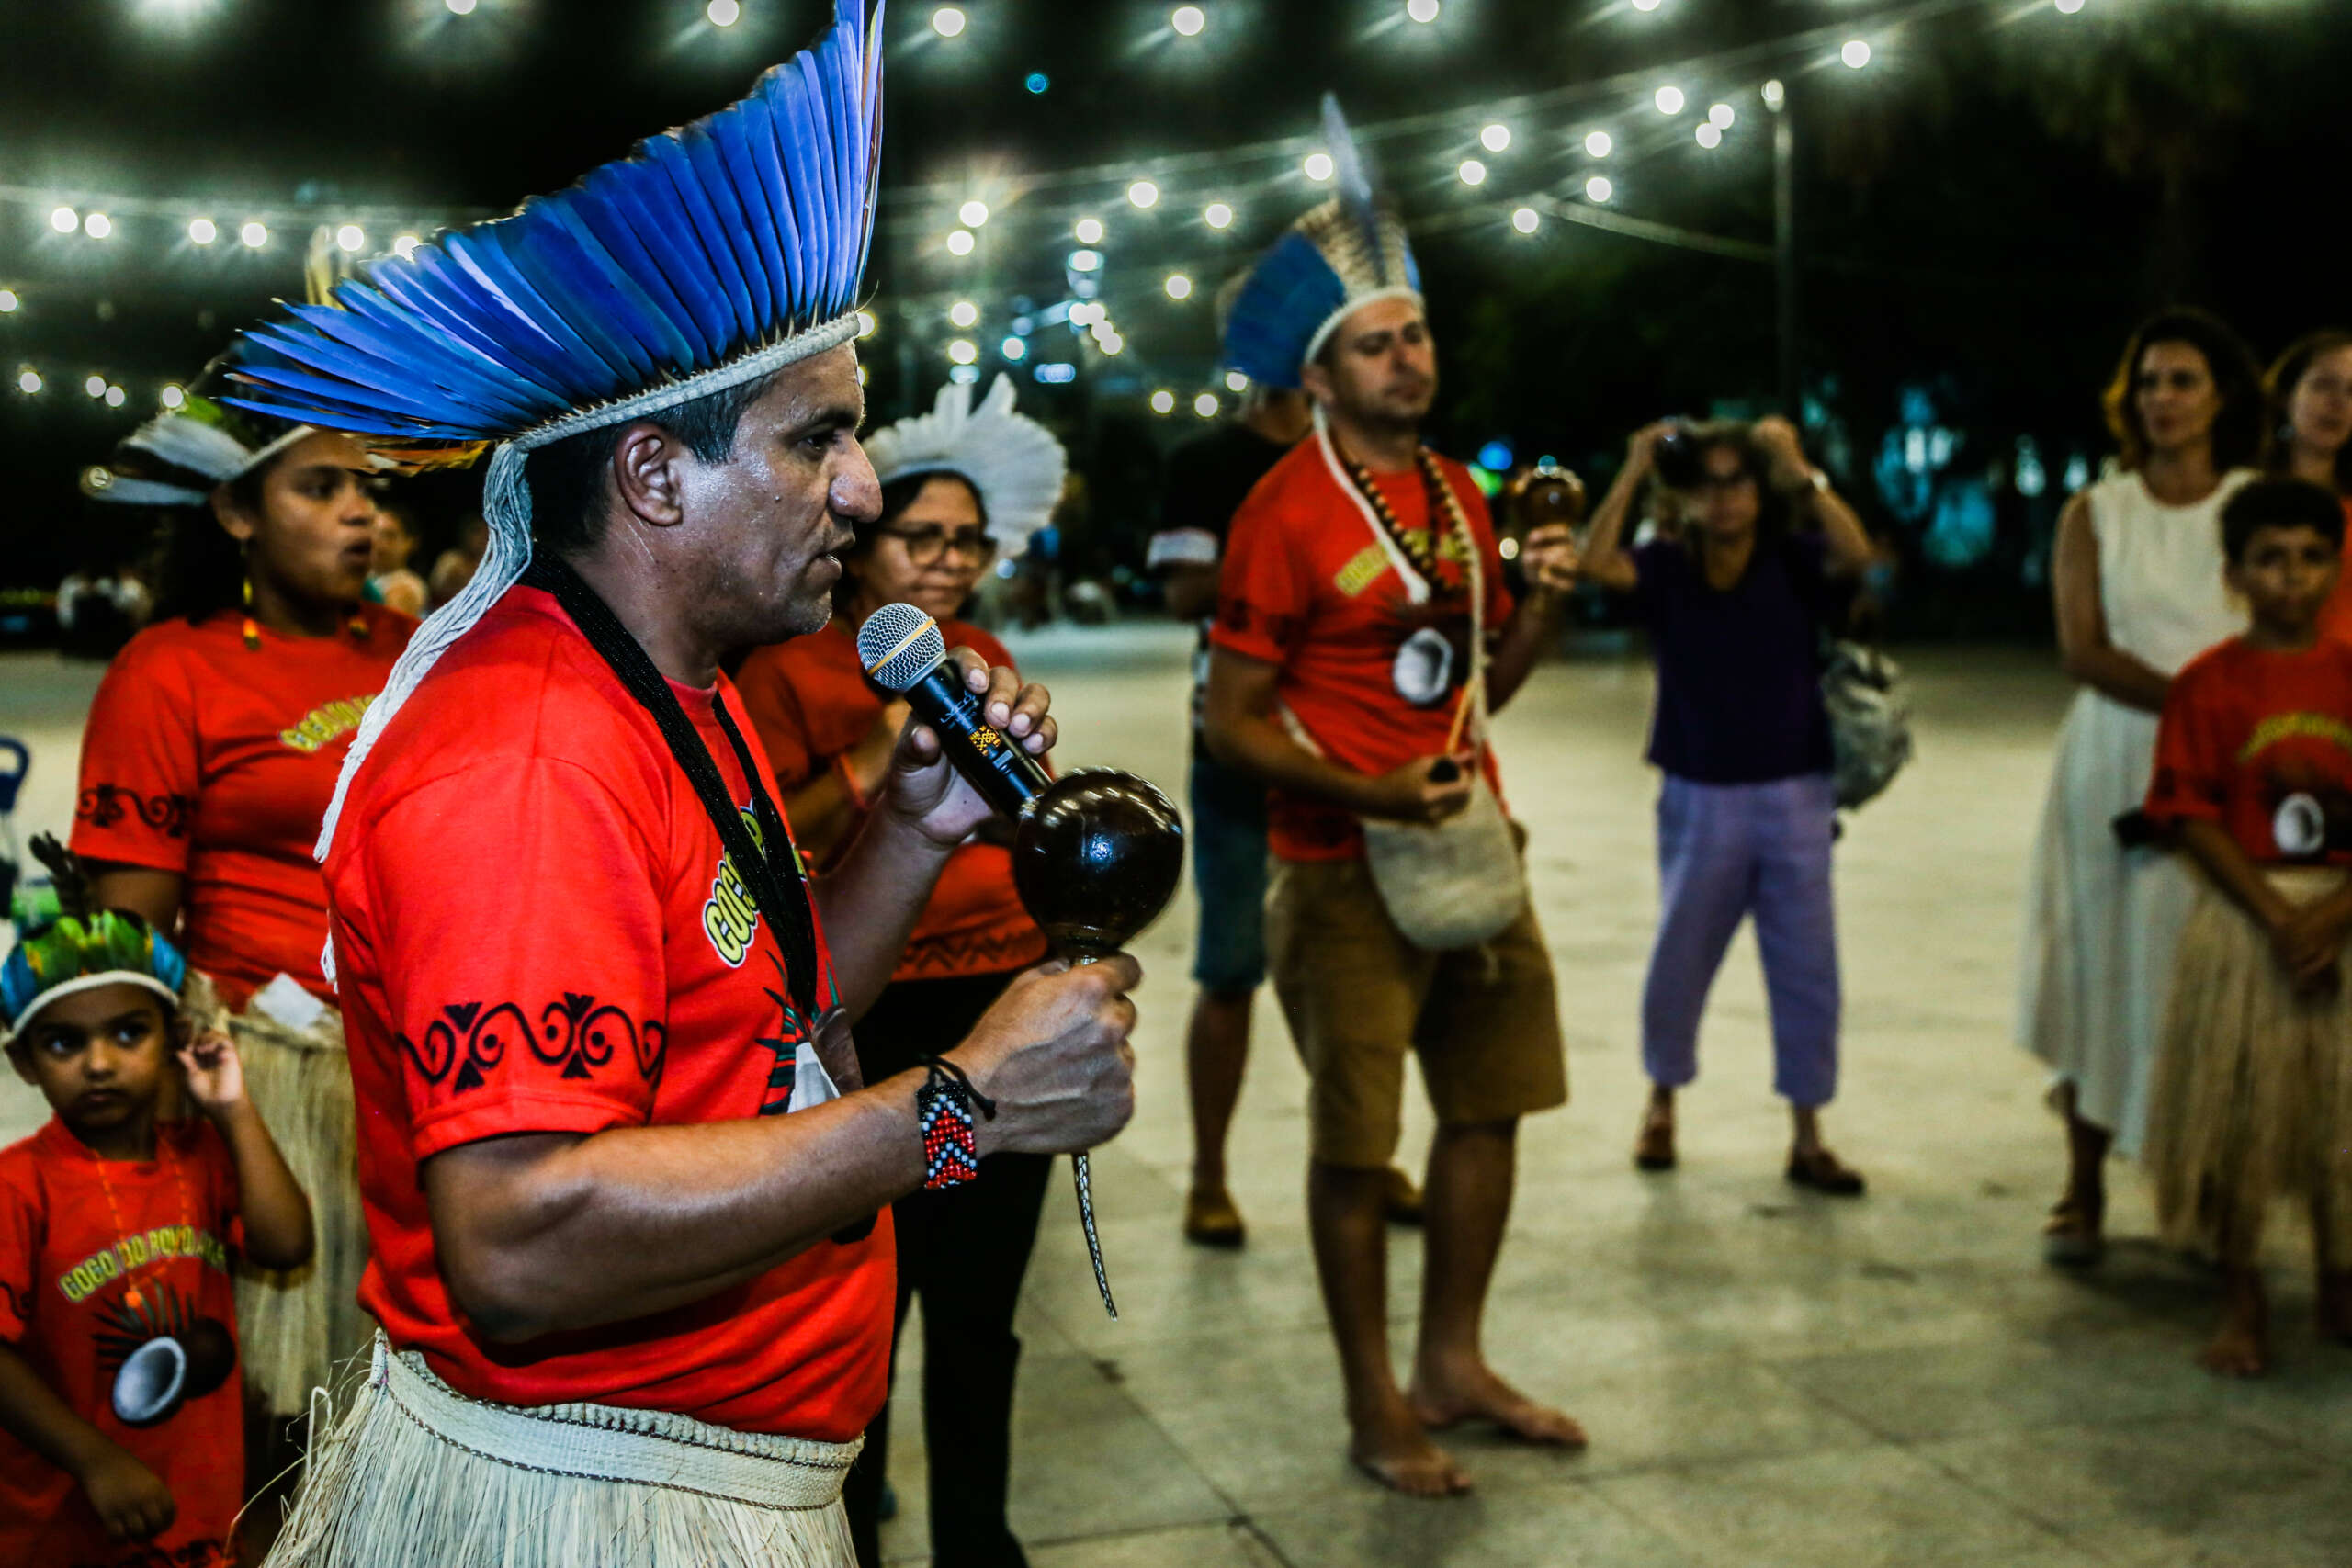 Indígenas expõem artesanatos e apresentam danças e pinturas na CeArt até sexta-feira (19)